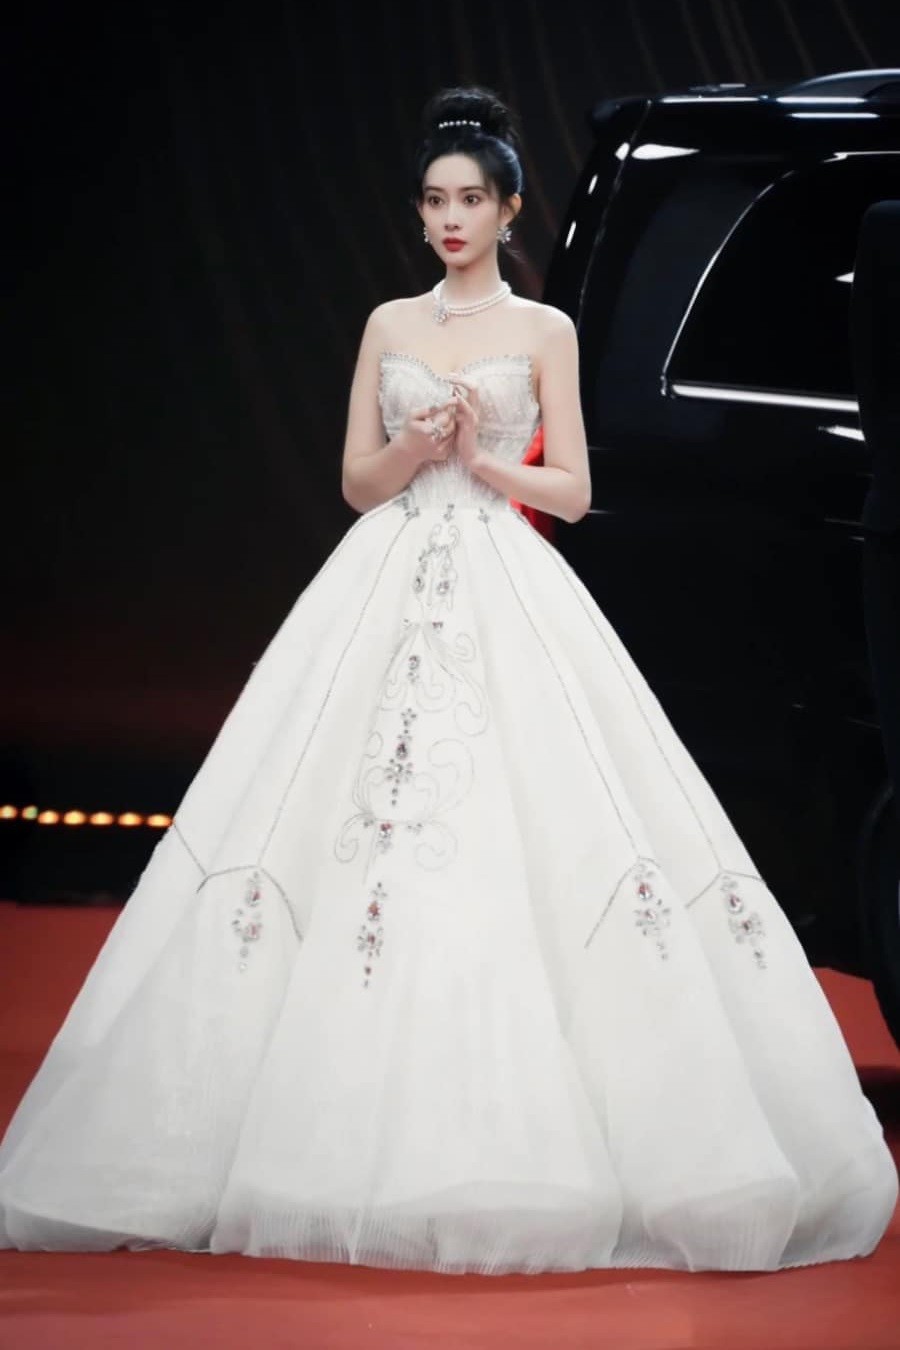 Ngày 17/12, xuất hiện trong lễ trao giải Tencent Video All Star Night 2023 diễn ra tại Macau (Trung Quốc), nữ diễn viên Mạnh Tử Nghĩa như công chúa trên thảm đỏ với đầm dạ hội của NTK Trà Linh.